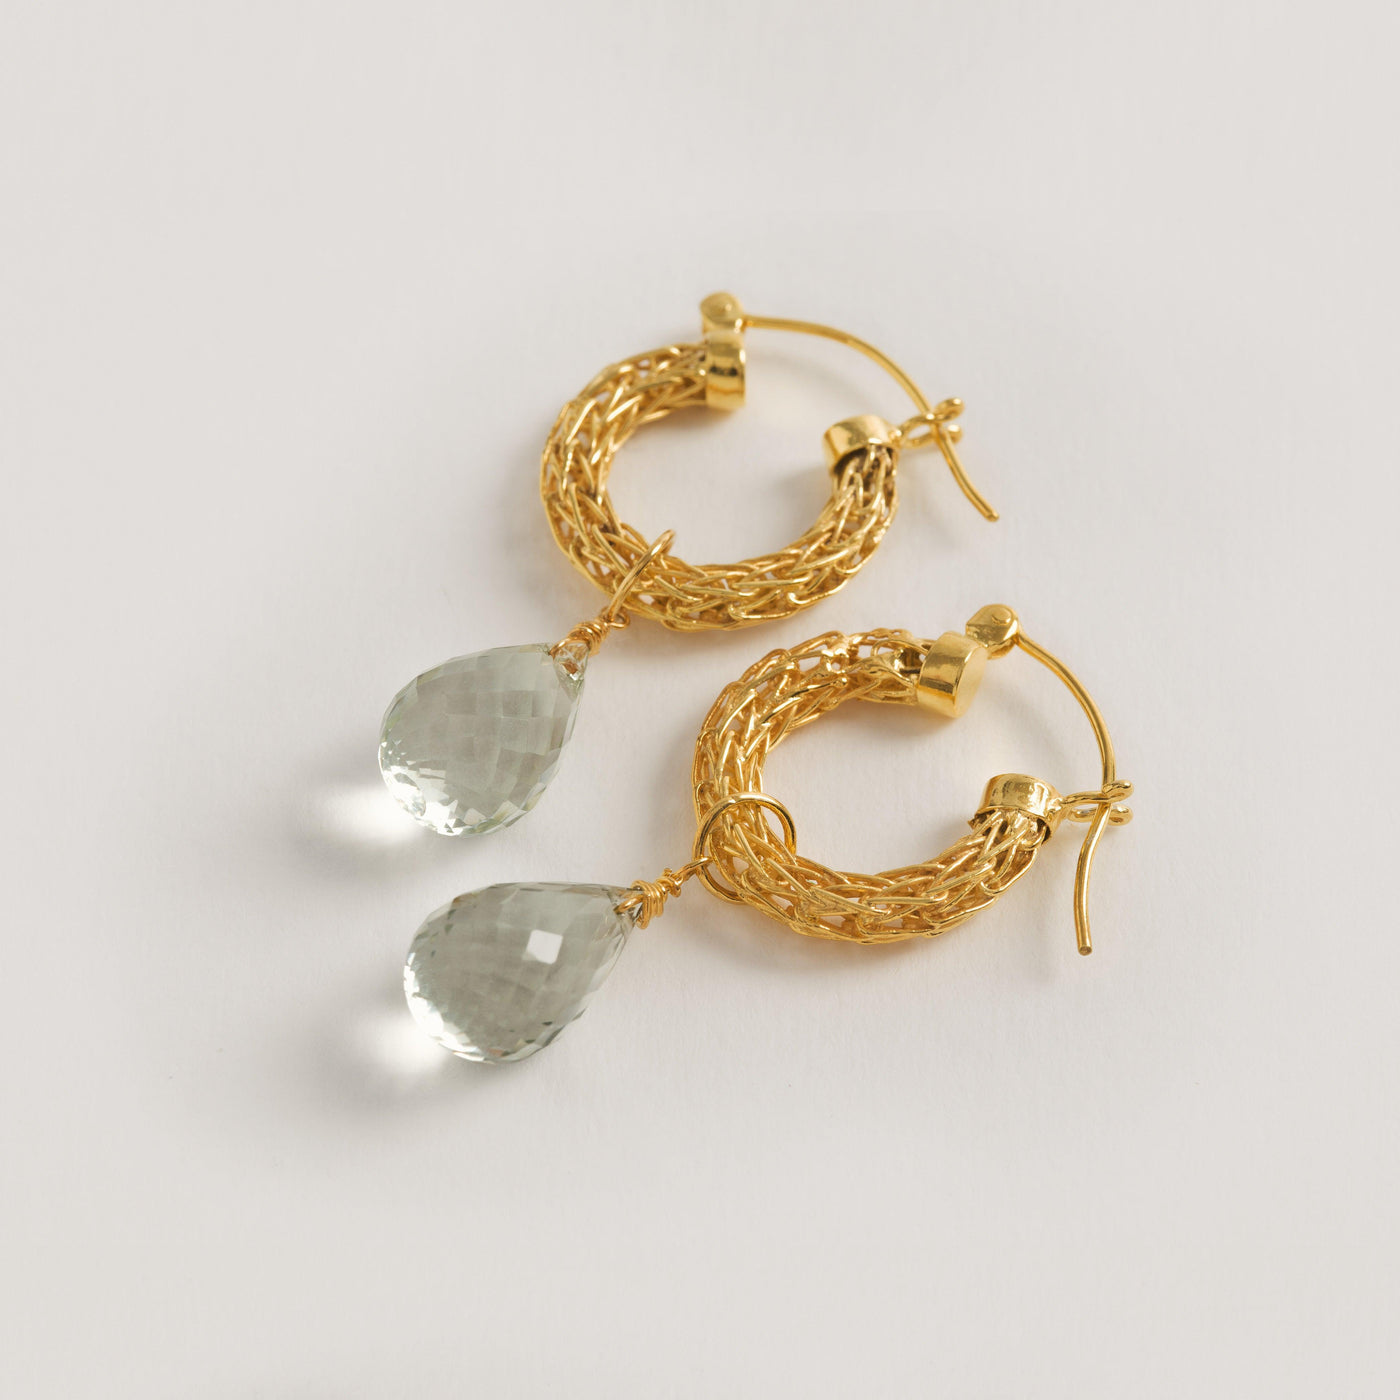 Gold Weave Mini Hoop Earrings with Green Quartz Charm - Freya Rose Jewellery